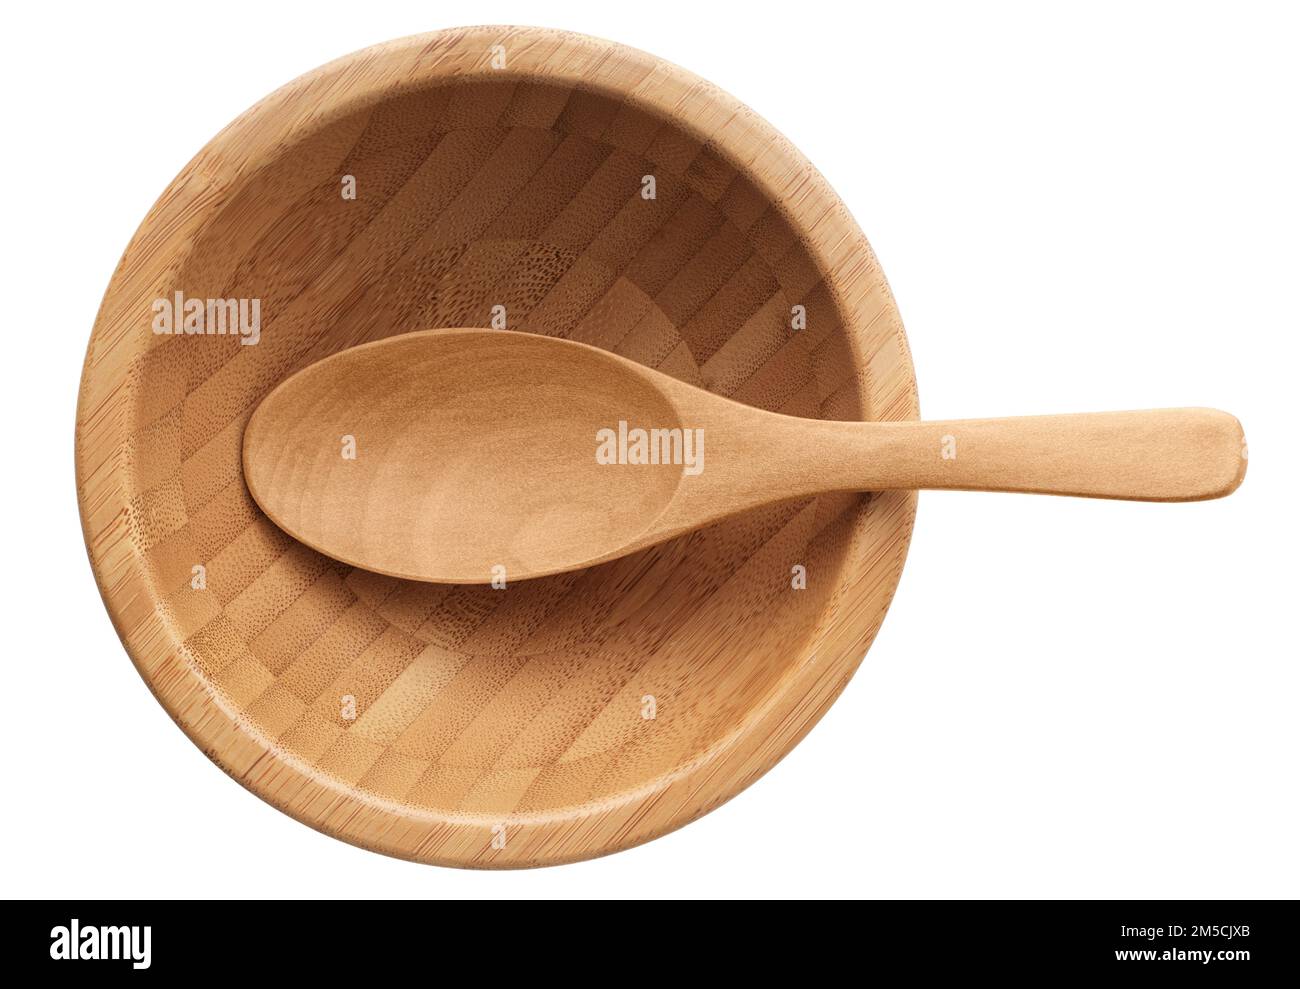 Recipiente e cucchiaio di legno vuoti, utensili da cucina rustici, isolati su fondo bianco Foto Stock